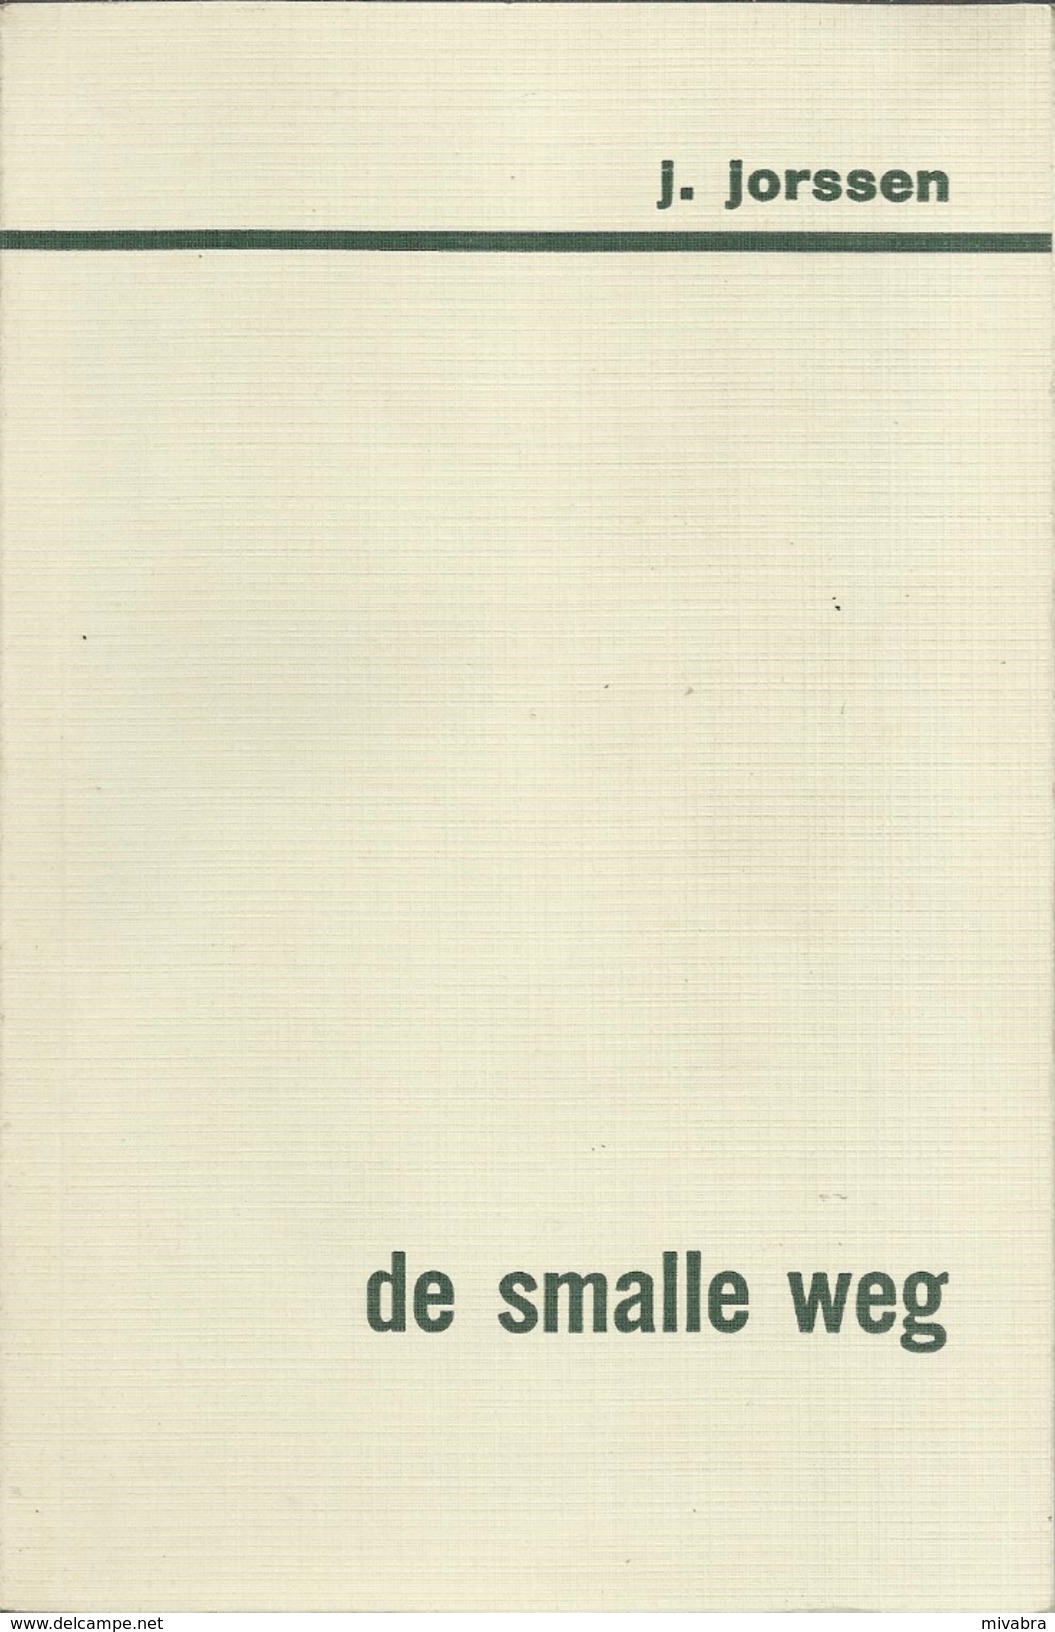 JET JORSSEN - DE SMALLE WEG - BEIAARD REEKS DAVIDSFONDS LEUVEN Nr. 547 - 1967-2 - Littérature